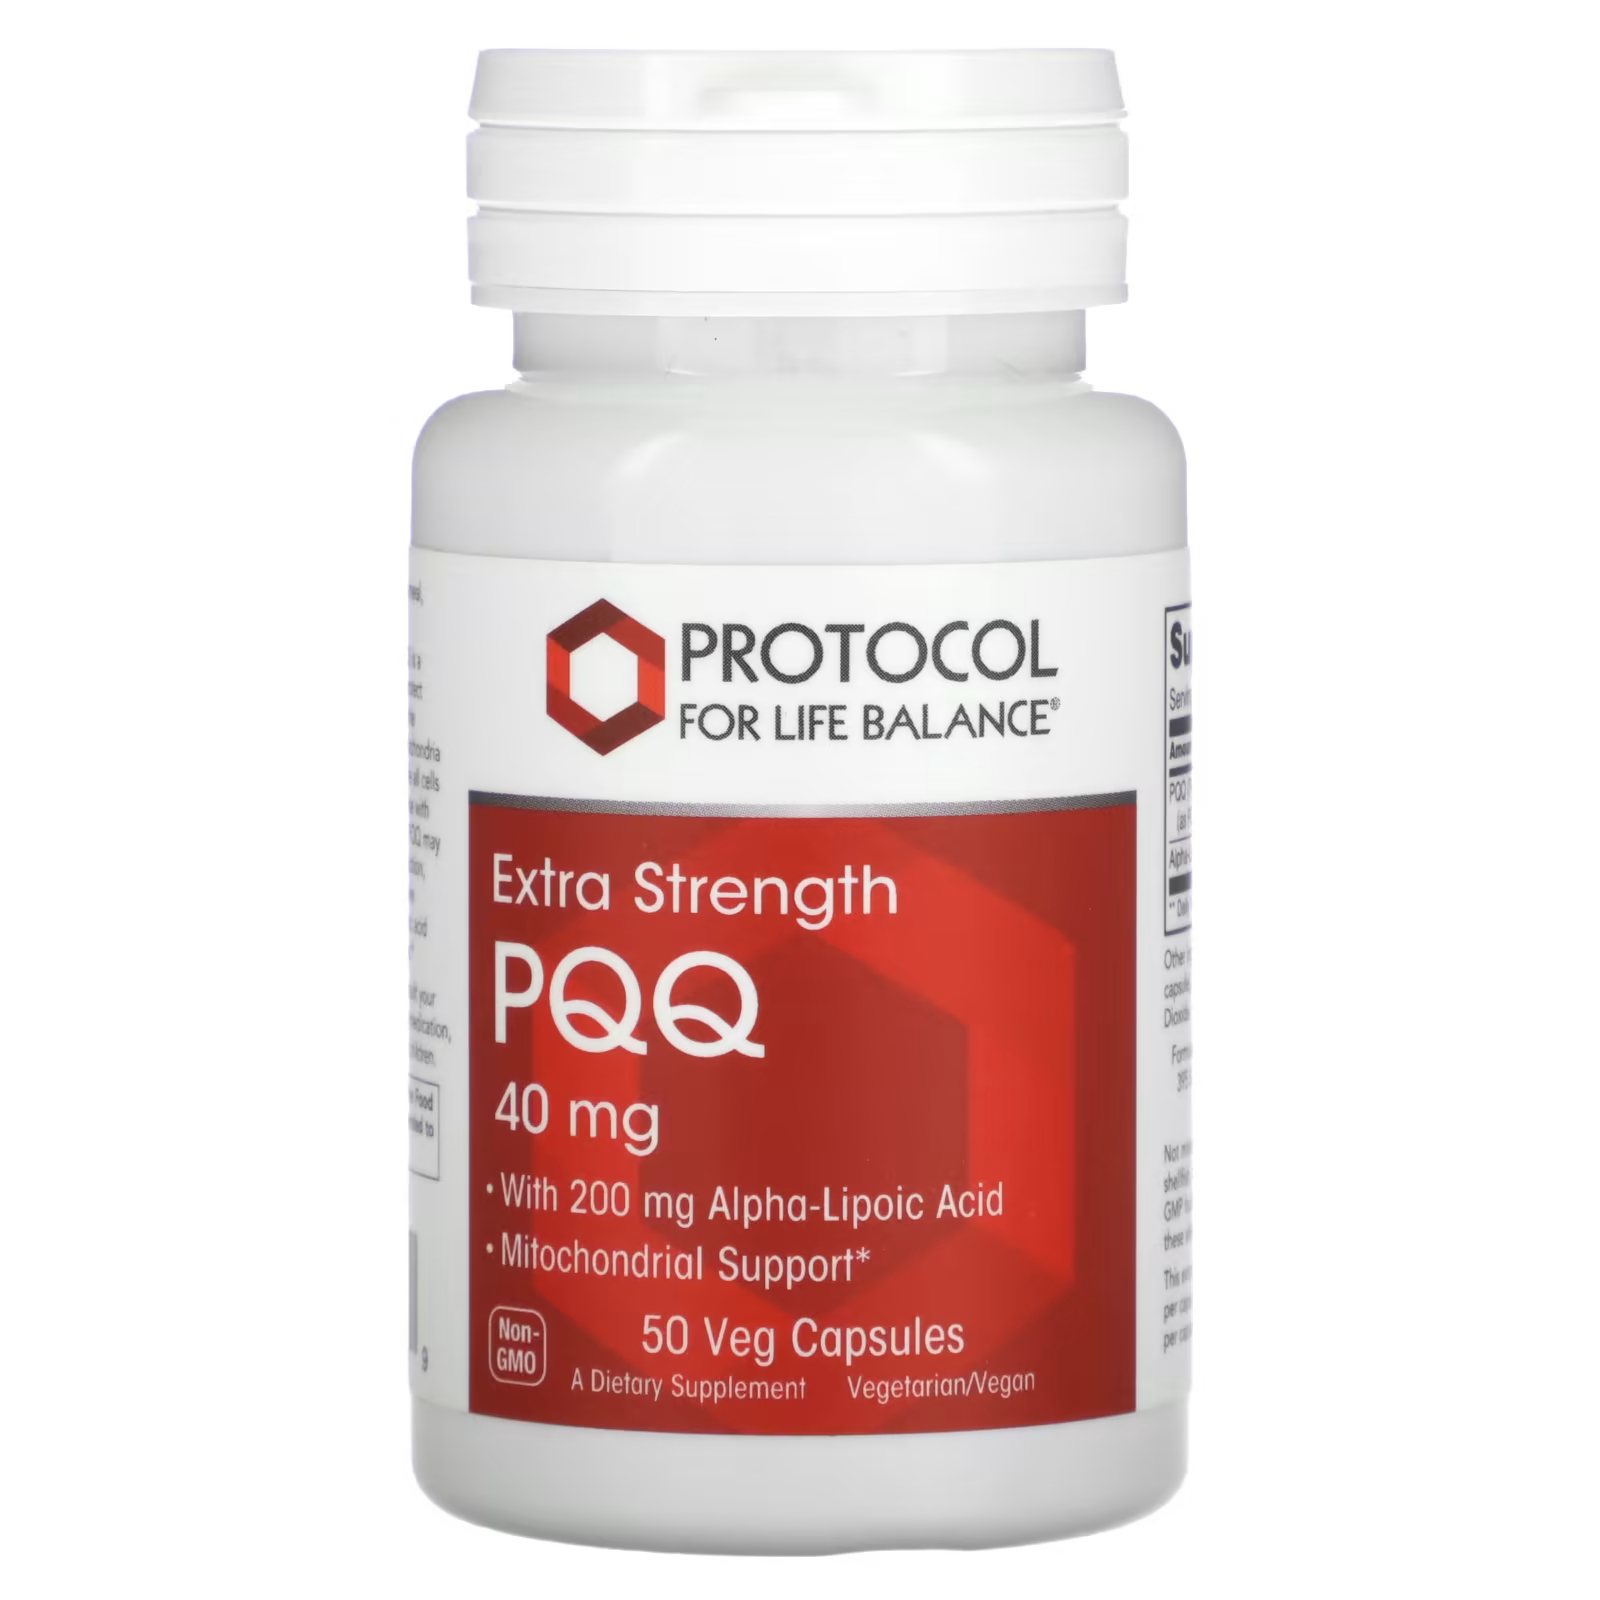 Пищевая добавка Protocol for Life Balance Pqq Extra Strength 40 мг, 50 растительных капсул